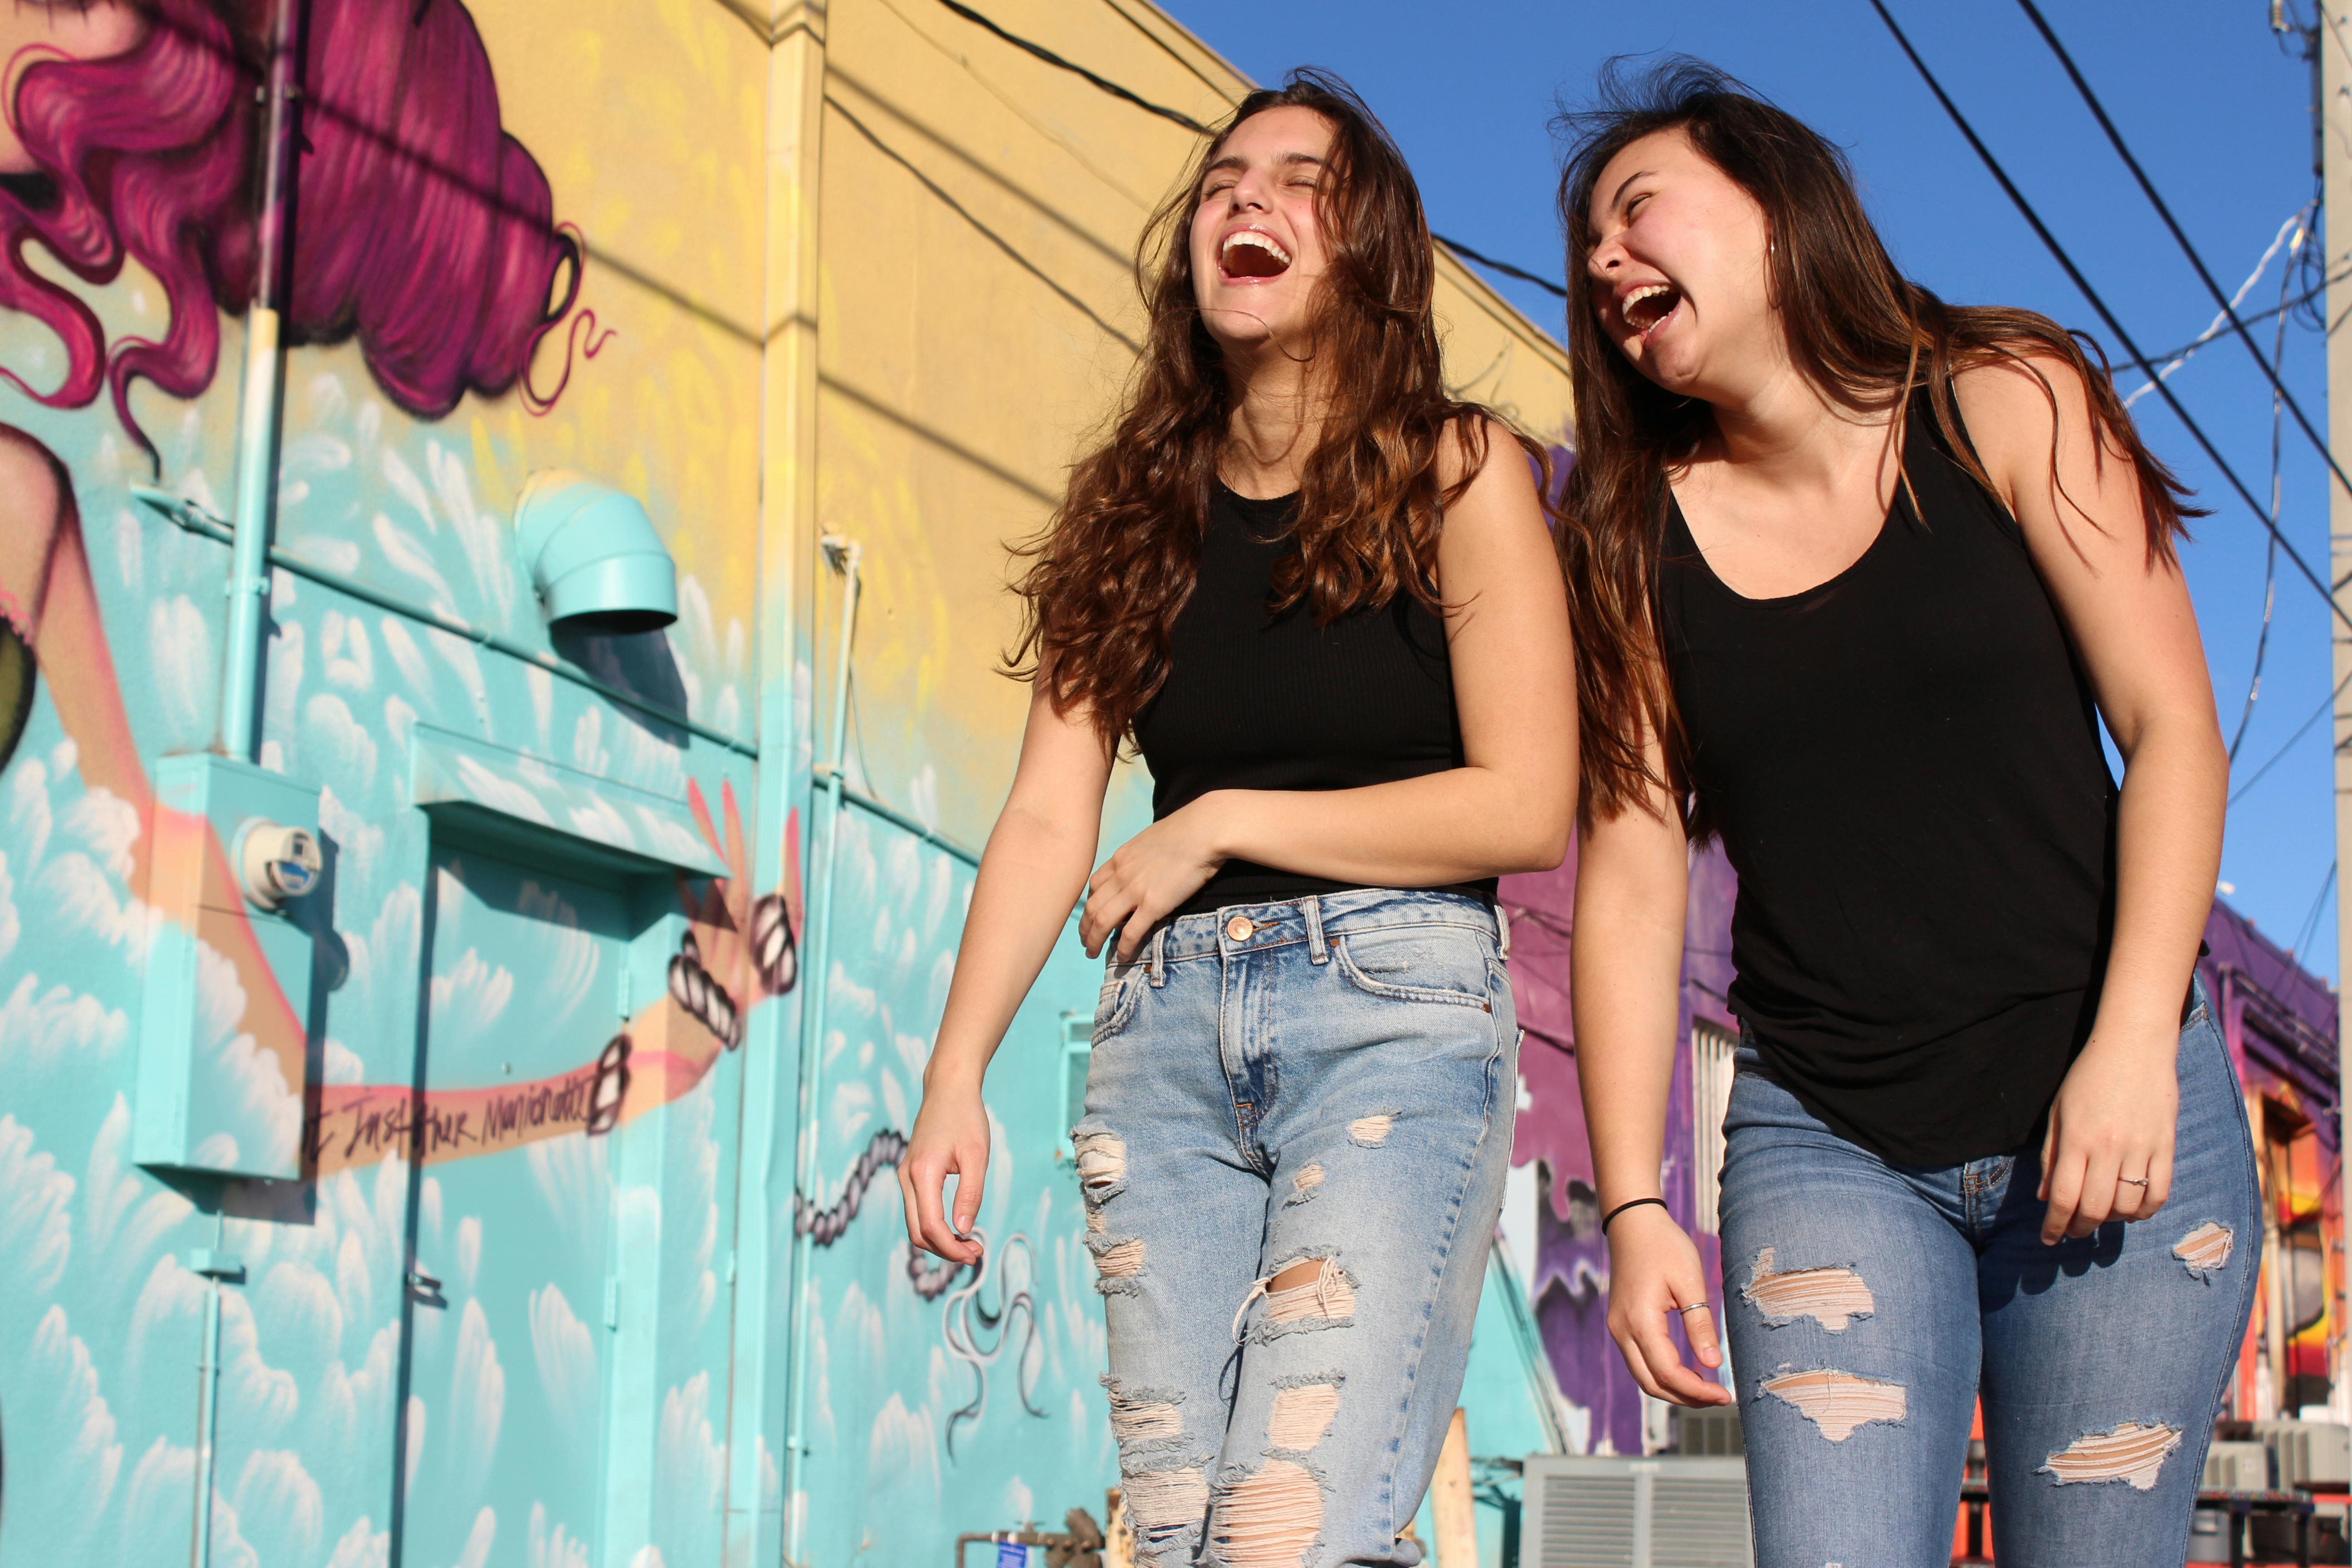 Zwei junge Frauen, die lachend spazieren gehen | Quelle: Savannah Dematteo auf Pexels